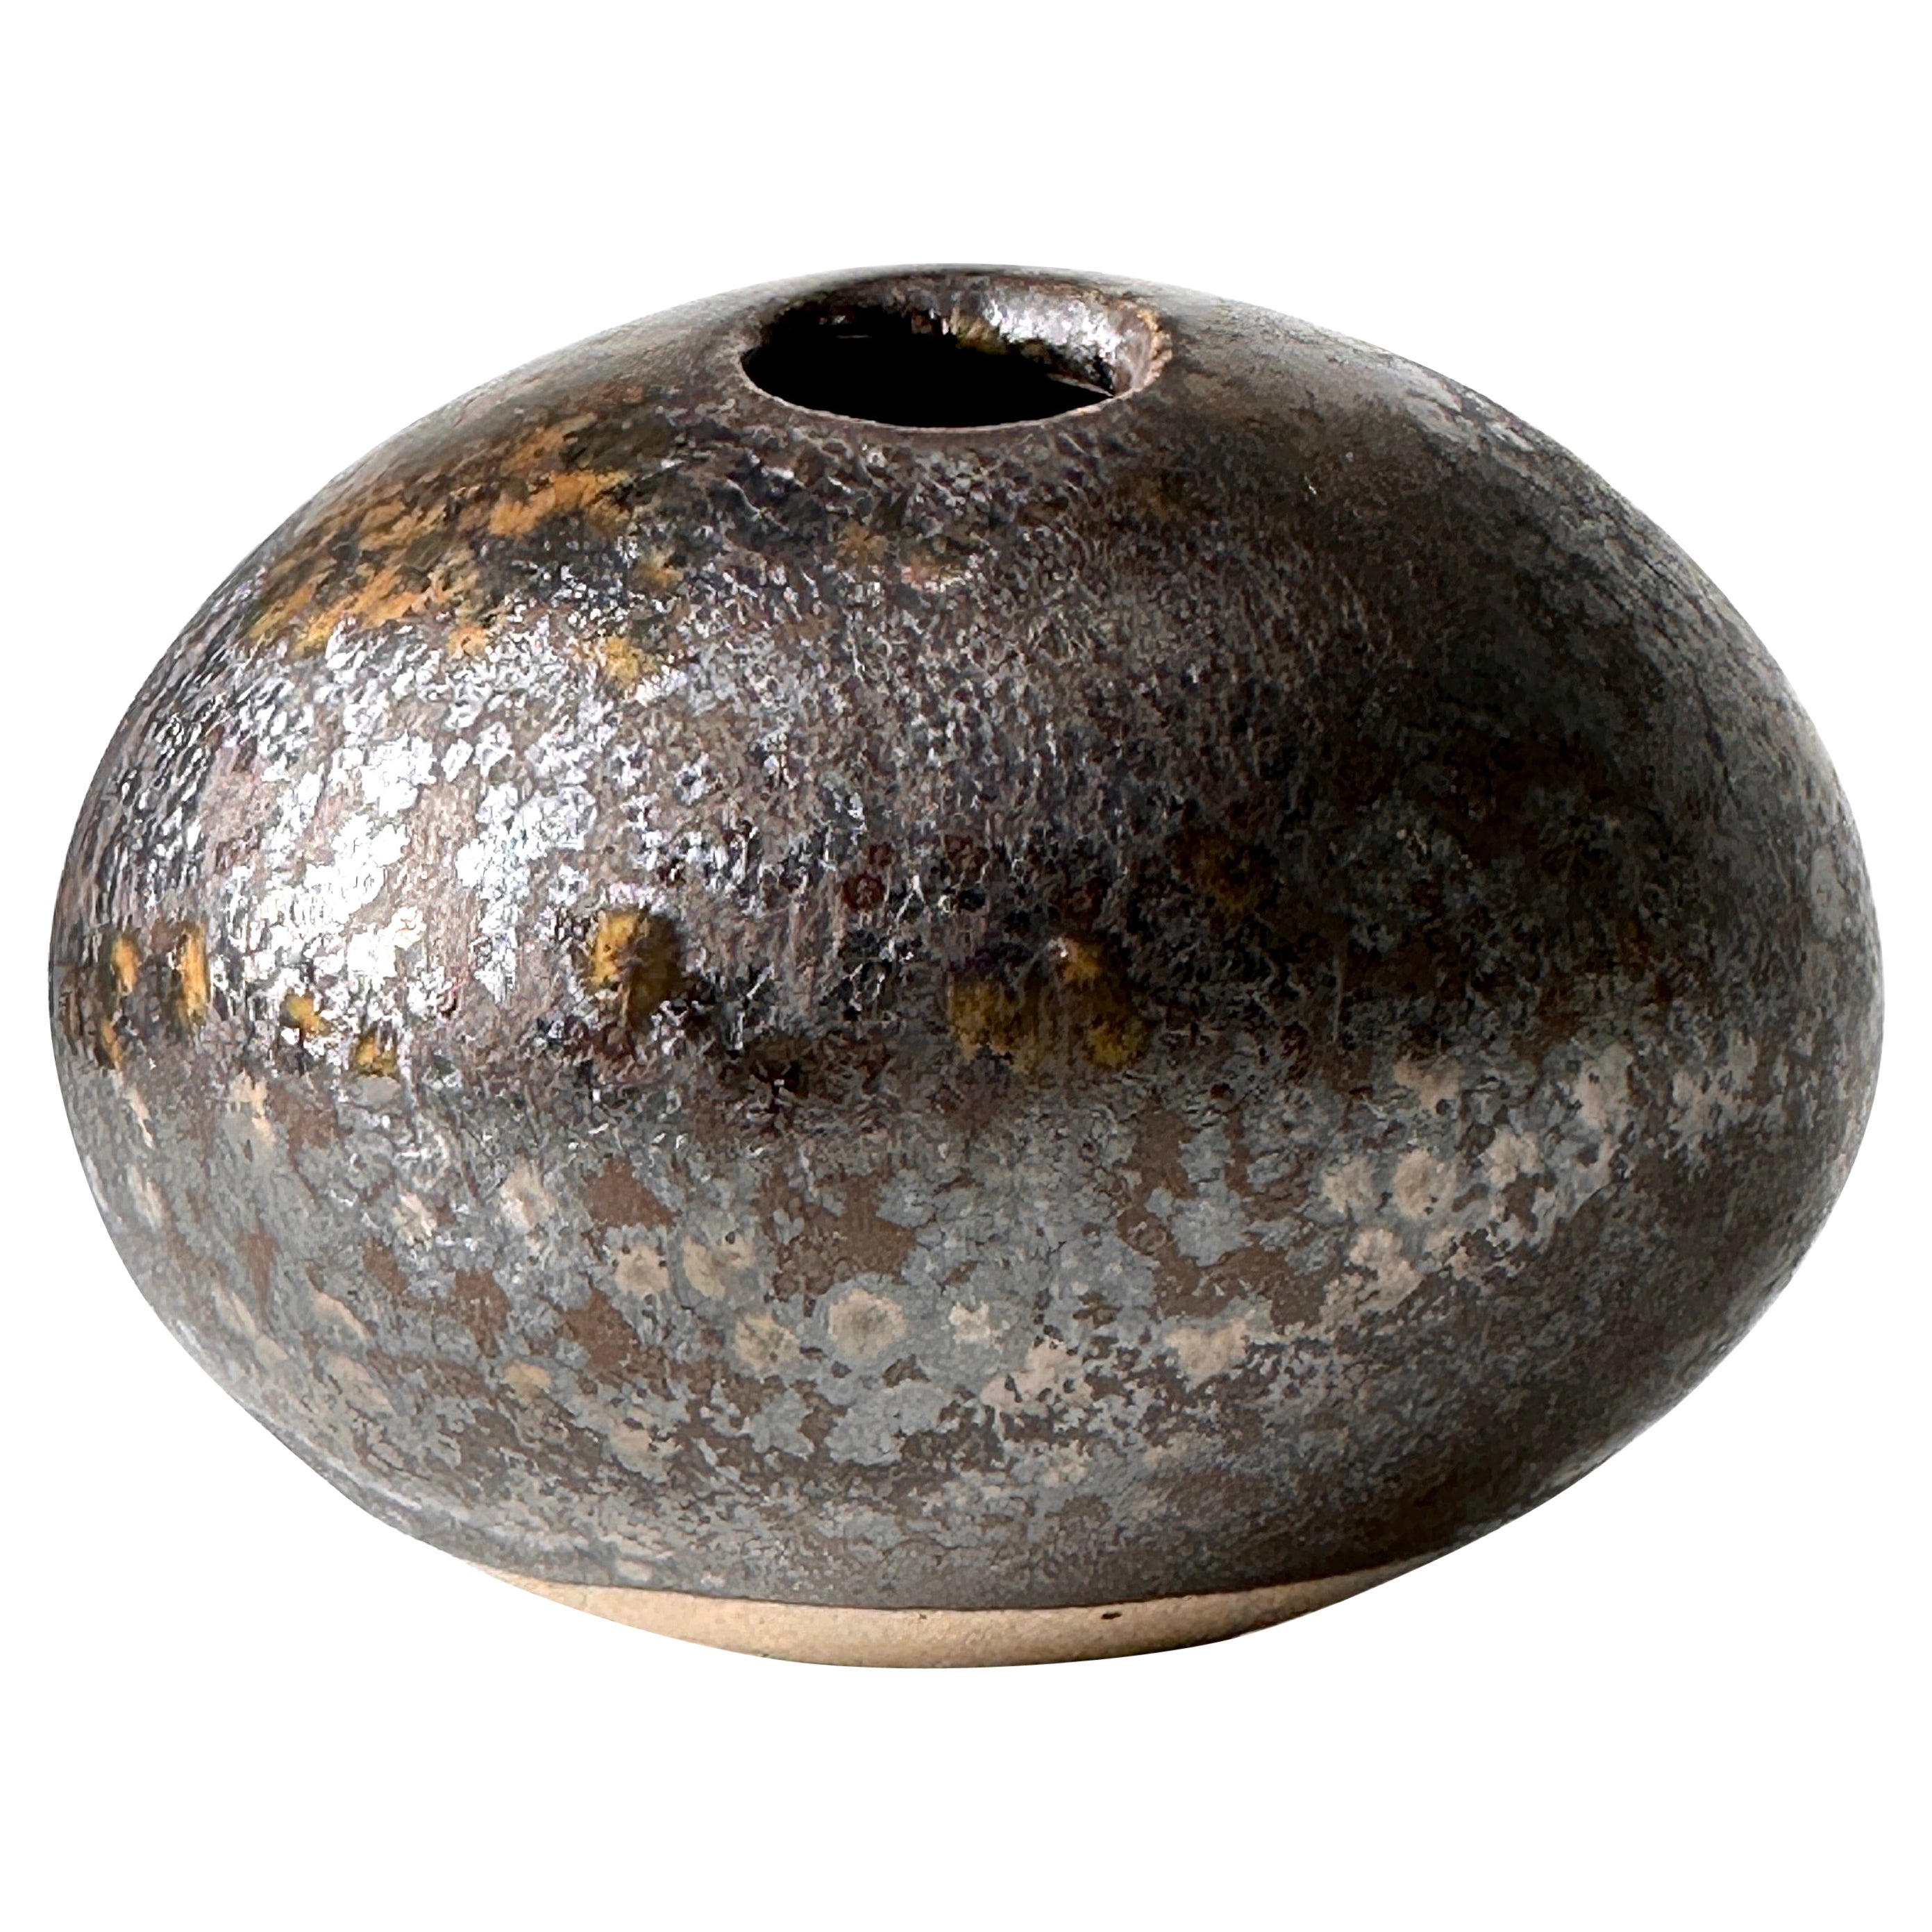 David Shaner River Rock Glazed Stoneware Ceramic Weed Vase Sculpture 1990s For Sale